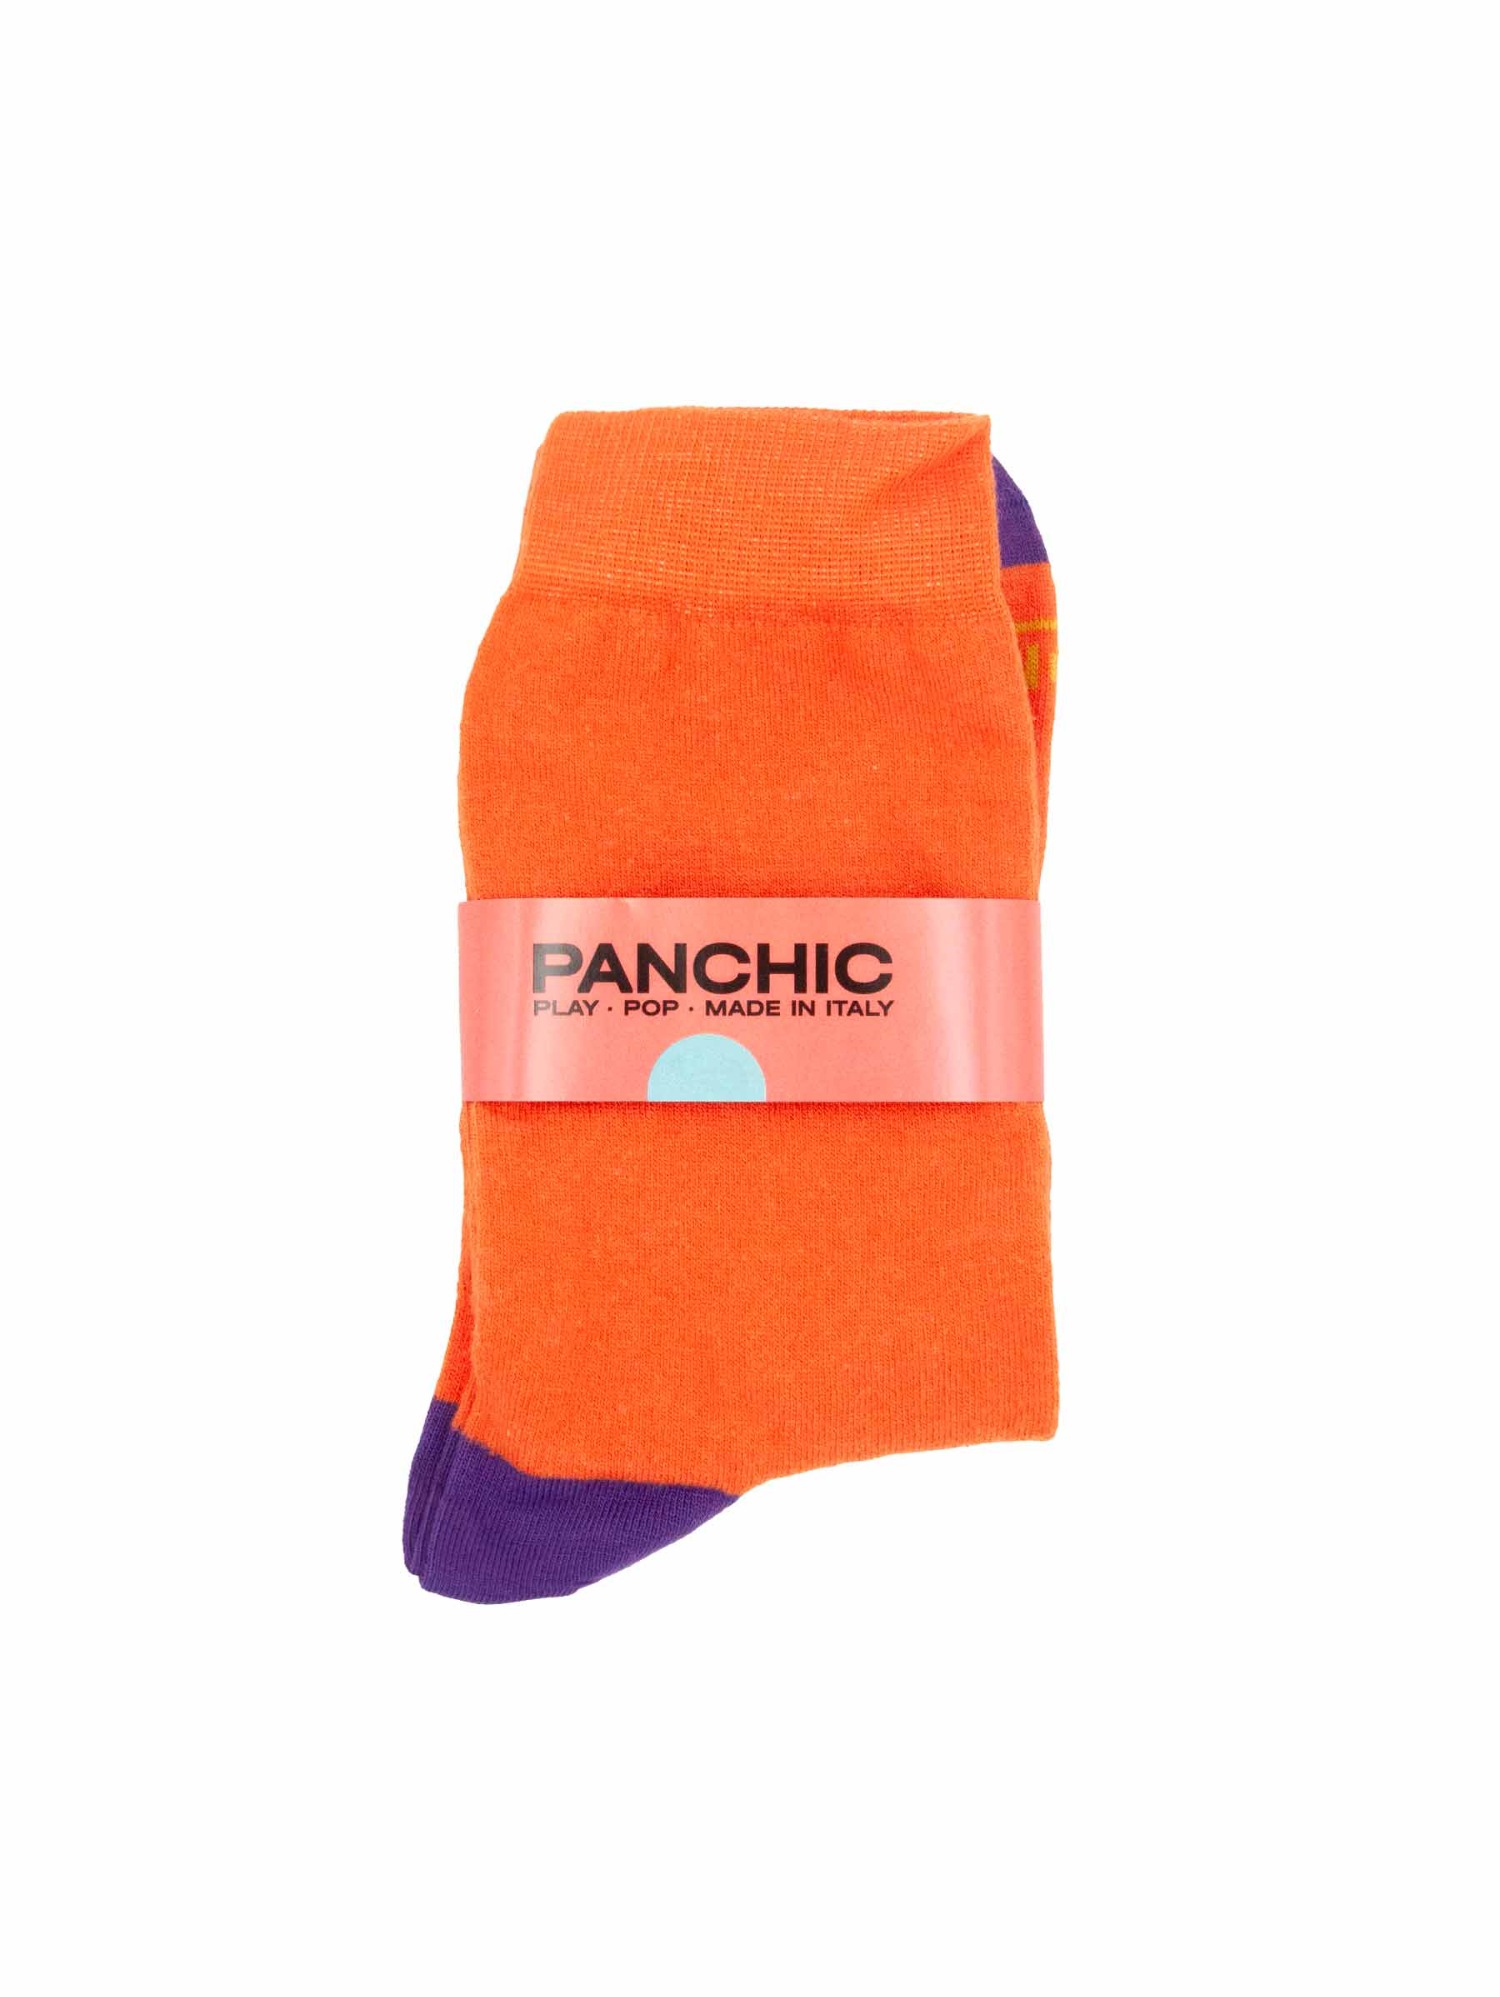 PANCHIC PASP005-0061Y001 SOCKS